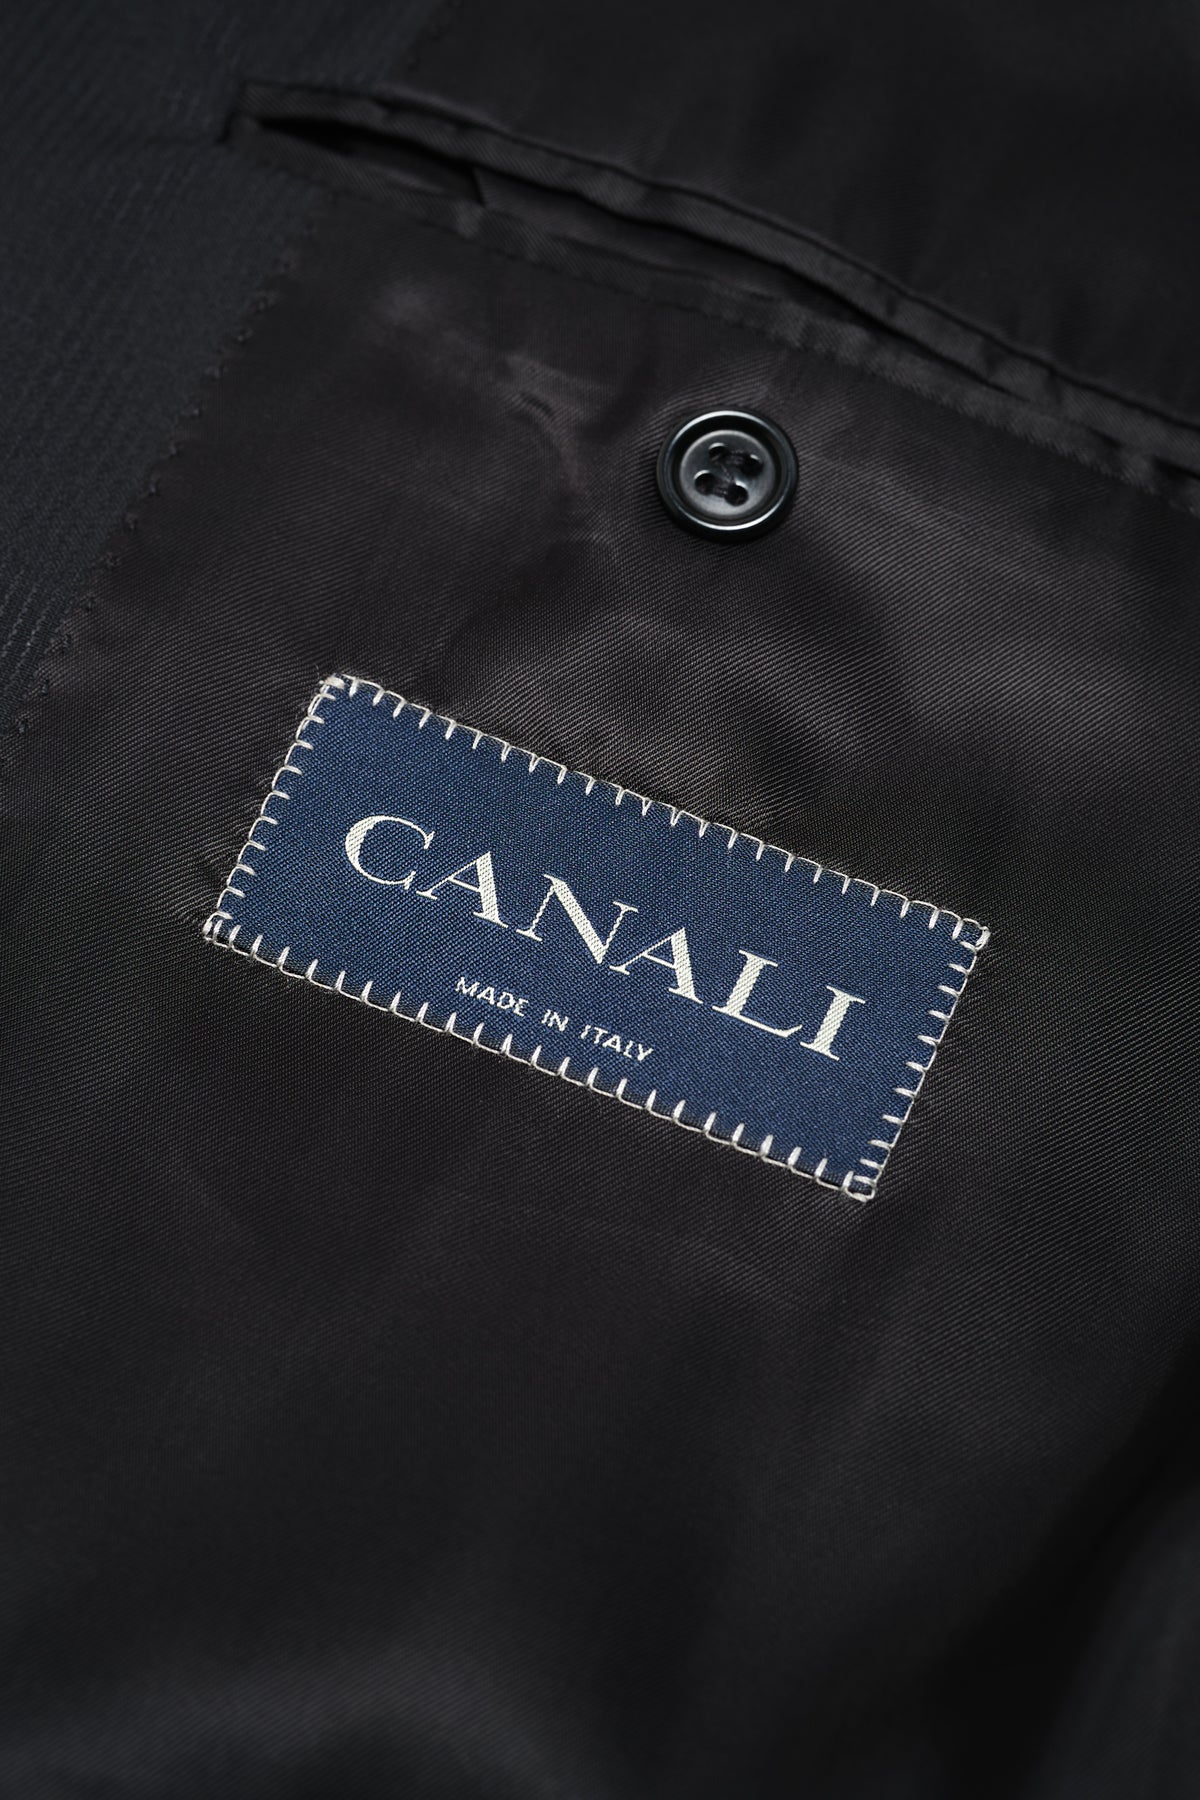 Canali Mens Black Tonal Striped 44L Drop 6 100% Wool 2 Button 2 Piece Suit